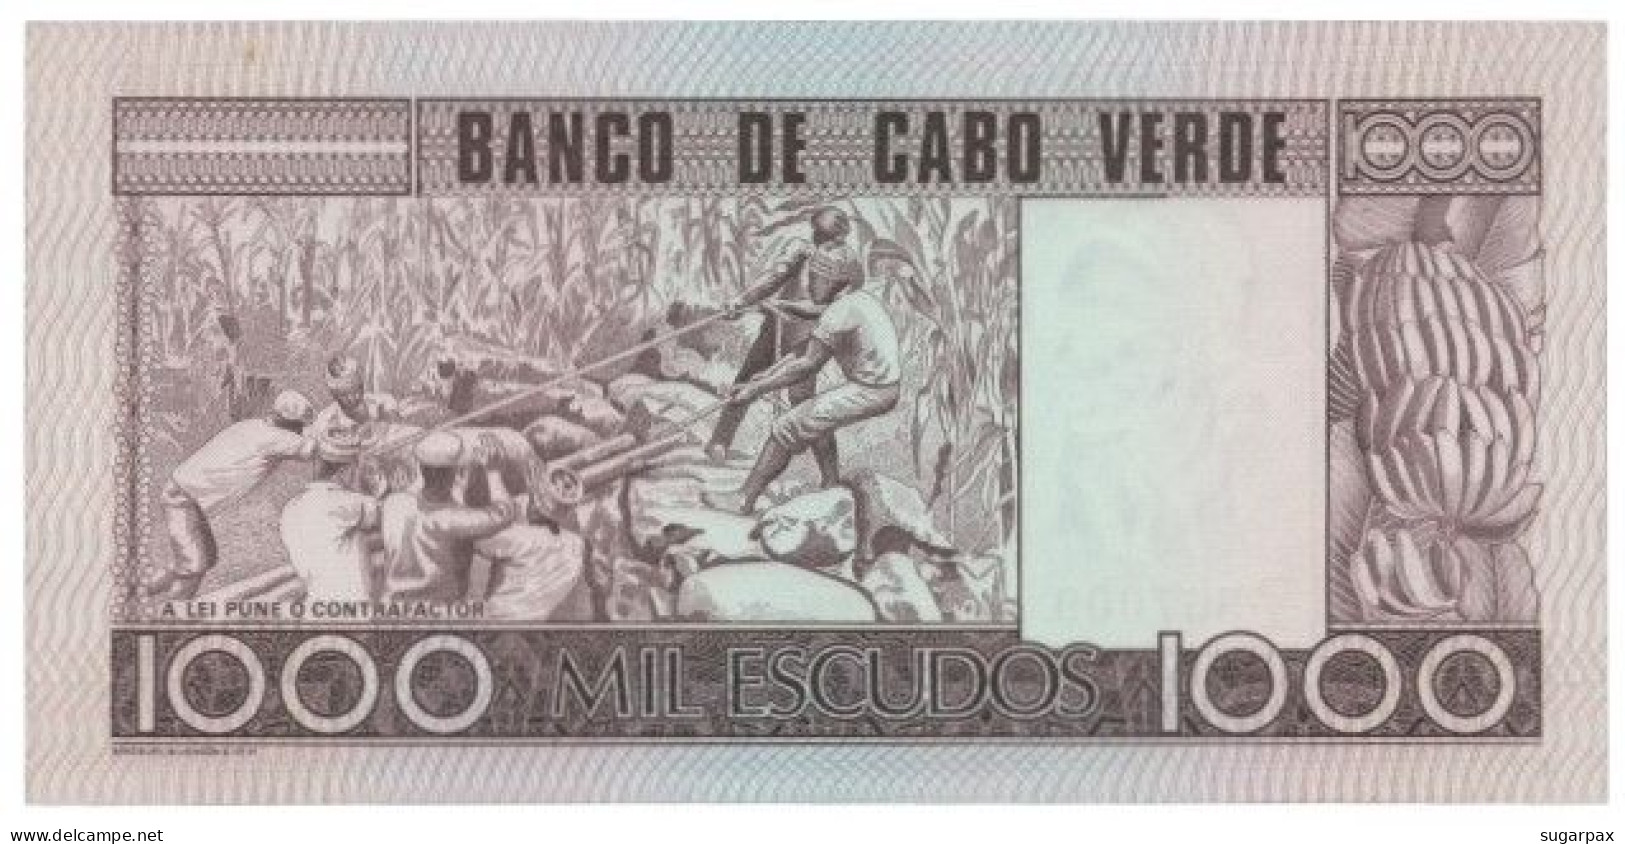 CAPE VERDE - 1000 ESCUDOS - 20.01.1977 - Pick 56.a - Unc. - Amilcar Cabral - 1 000 - Cape Verde